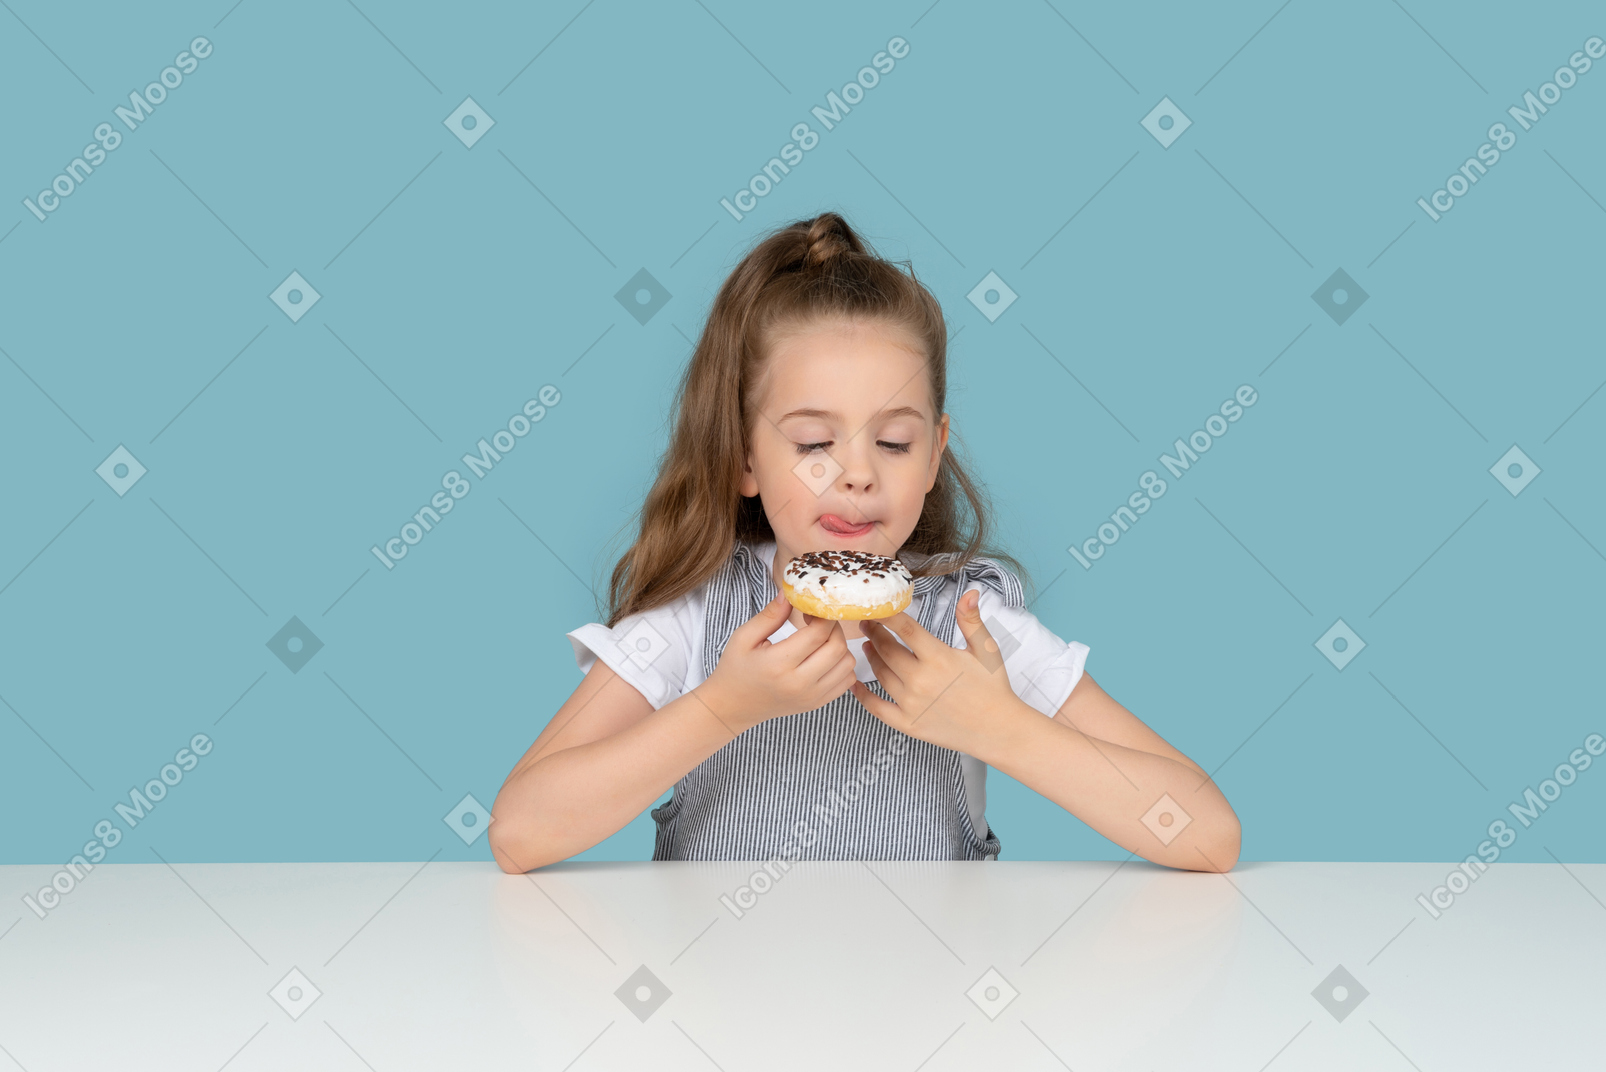 Cute little girl looking at a doughnut